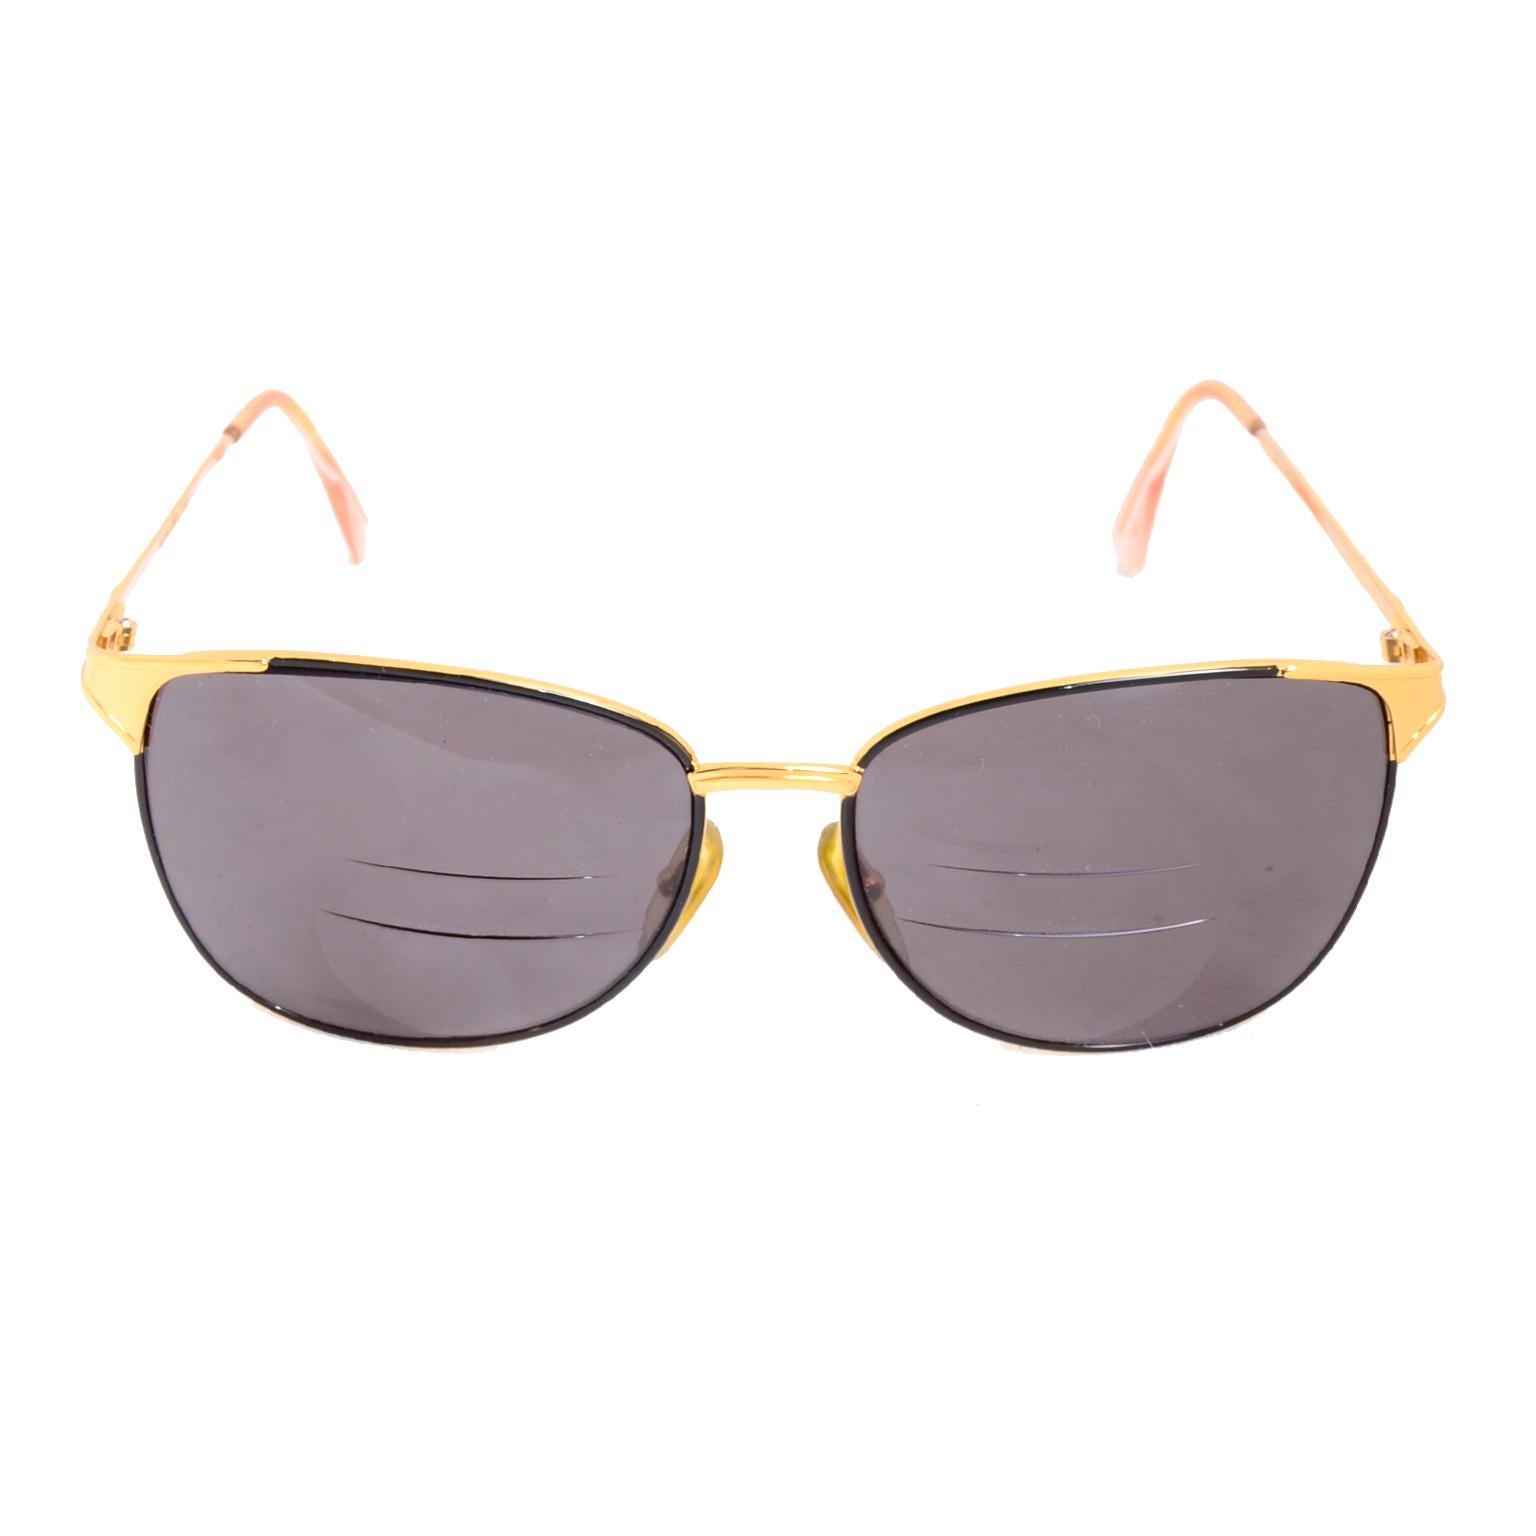 Ce sont de belles lunettes de soleil Laura Biagiotti à monture dorée.  Les verres étant soumis à prescription, vous devrez les faire changer pour les adapter à vos besoins personnels - soit avec des verres de lunettes de soleil ordinaires, soit avec